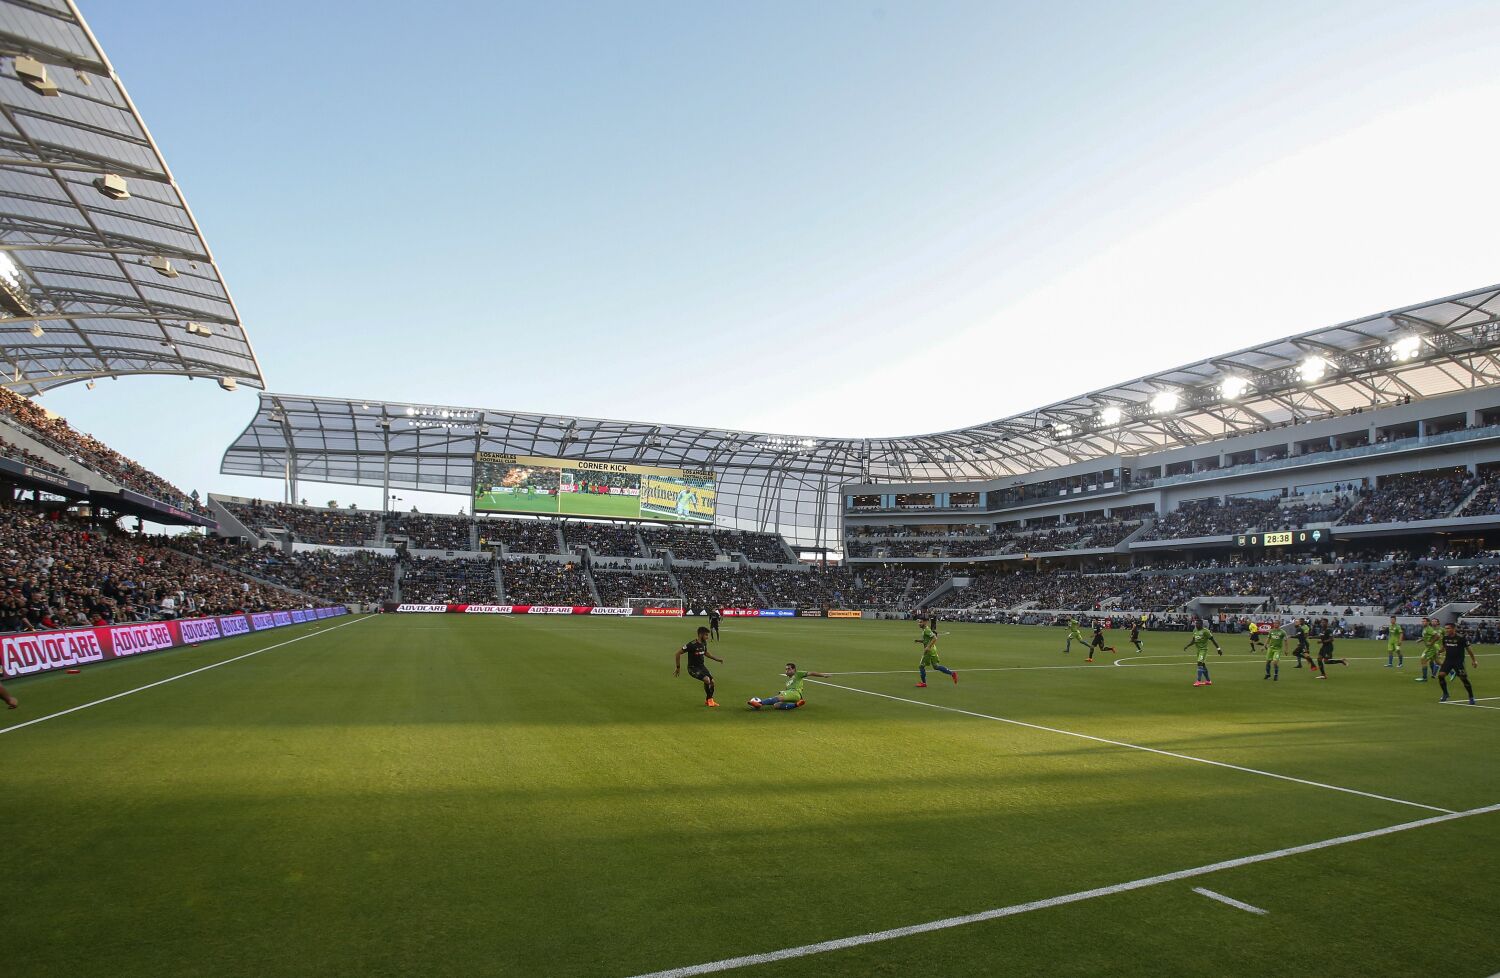 LAFC announces renaming of Banc of California Stadium to BMO Stadium